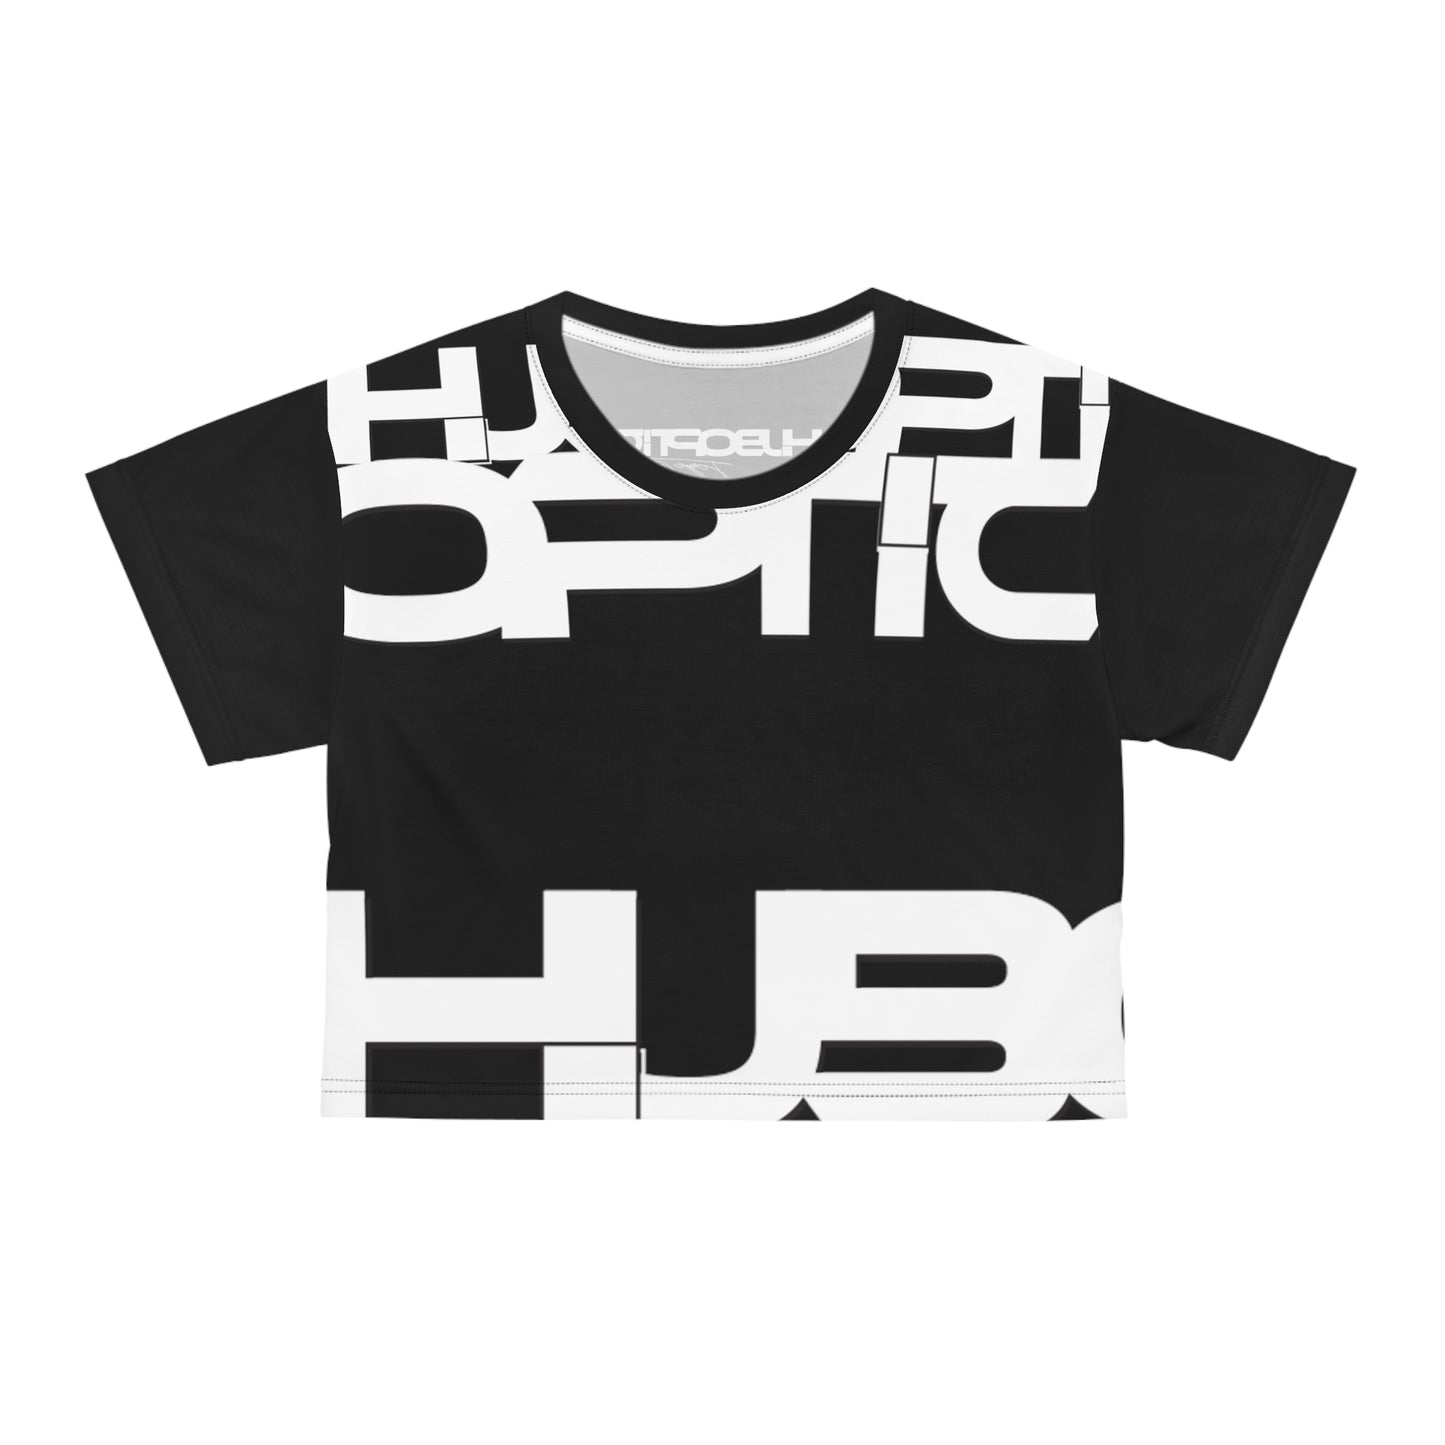 HUBOPTIC Original Black Logo P23 Crop Tee